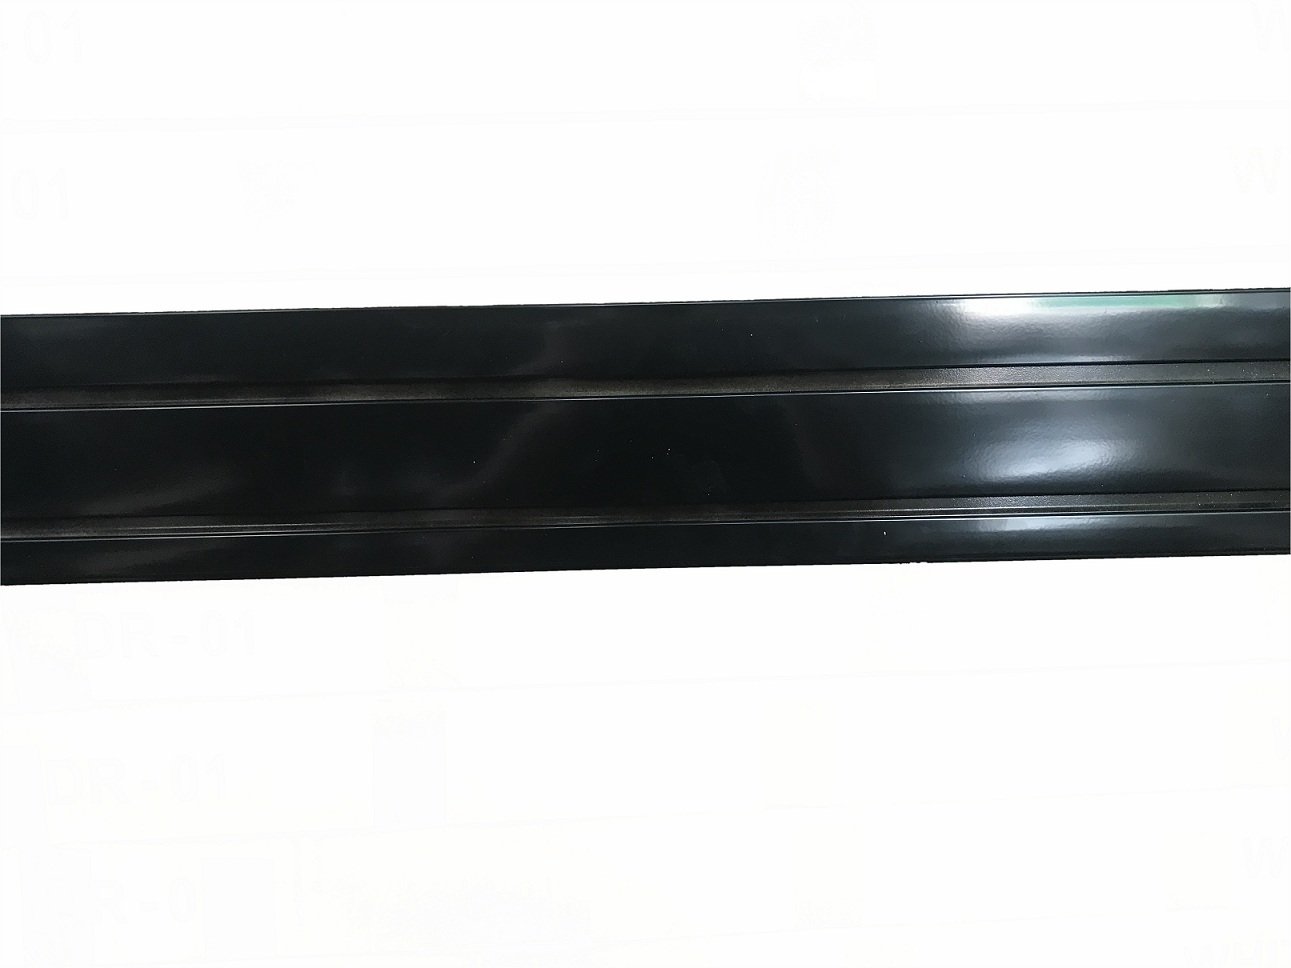 (Al-sw02) แผ่นอลูมิเนียม ผนังร่อง Slatwall สีดำ ขนาด 1.2 เมตร